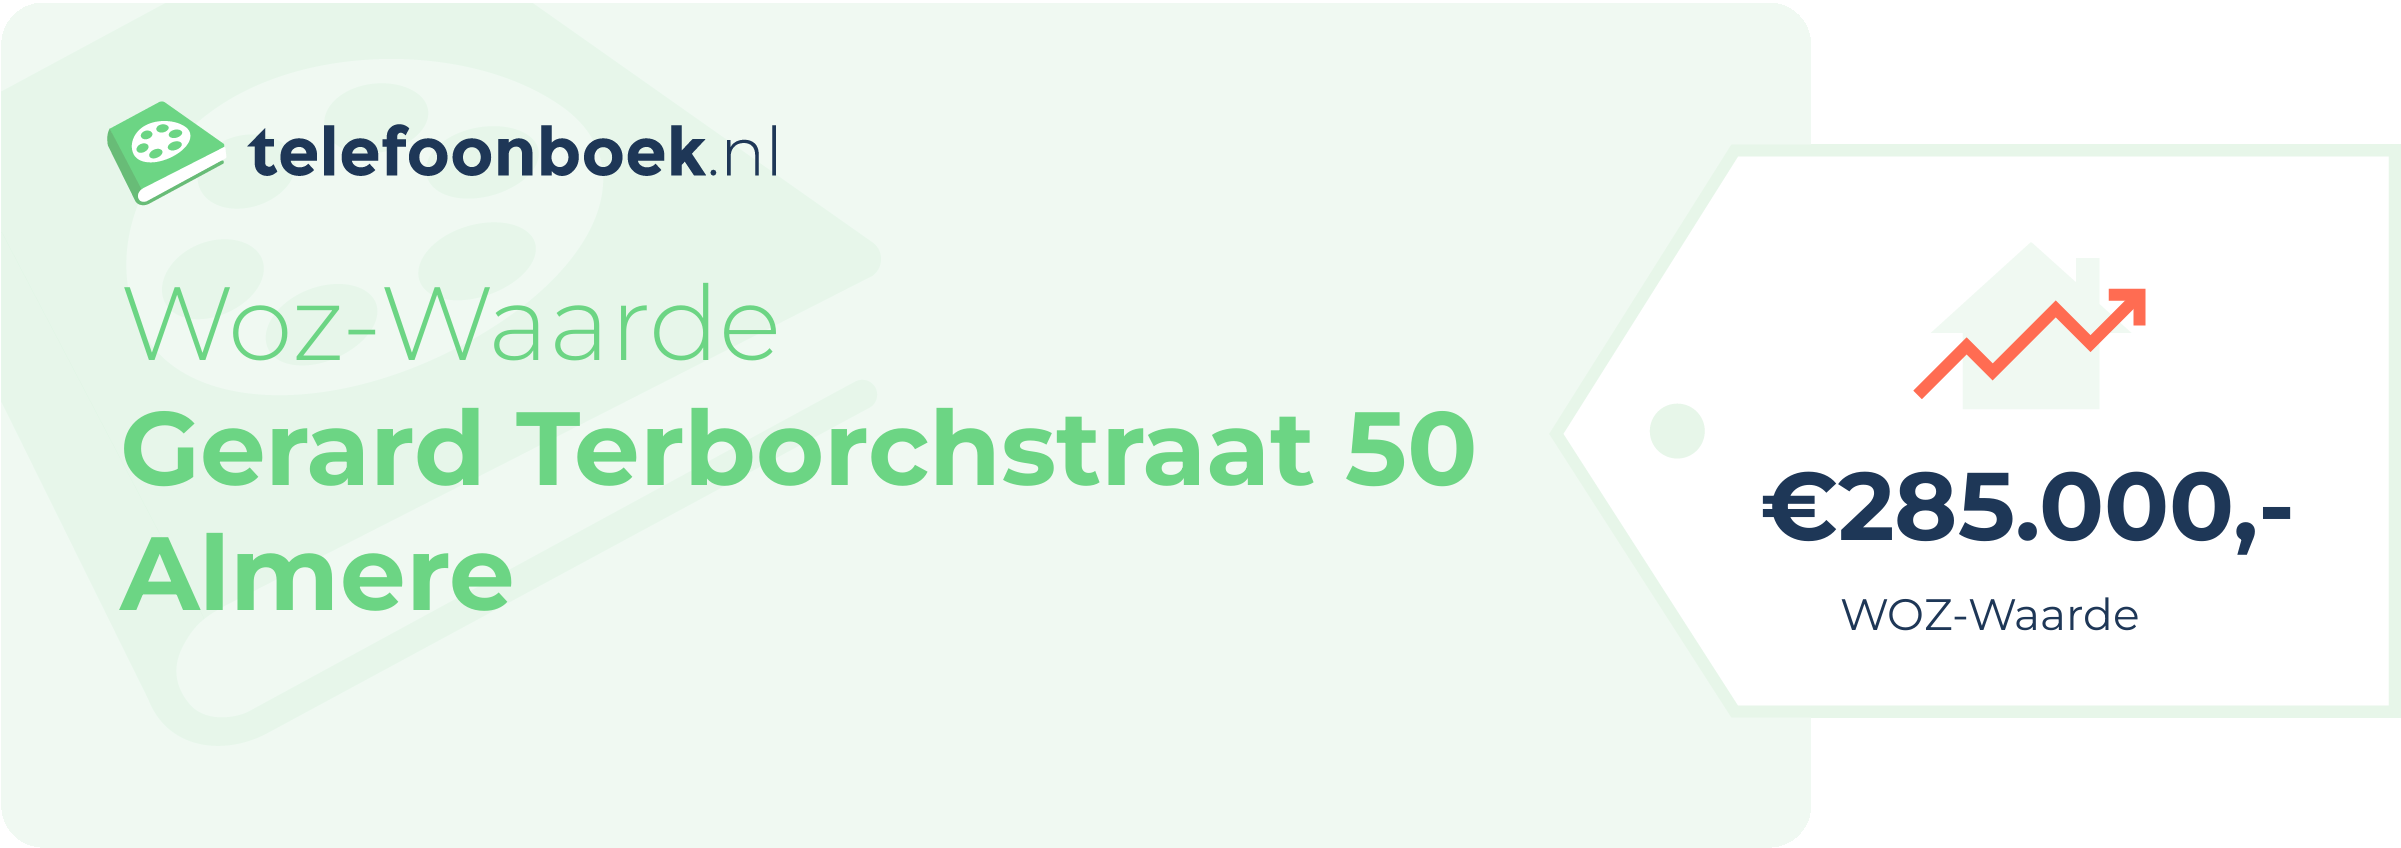 WOZ-waarde Gerard Terborchstraat 50 Almere